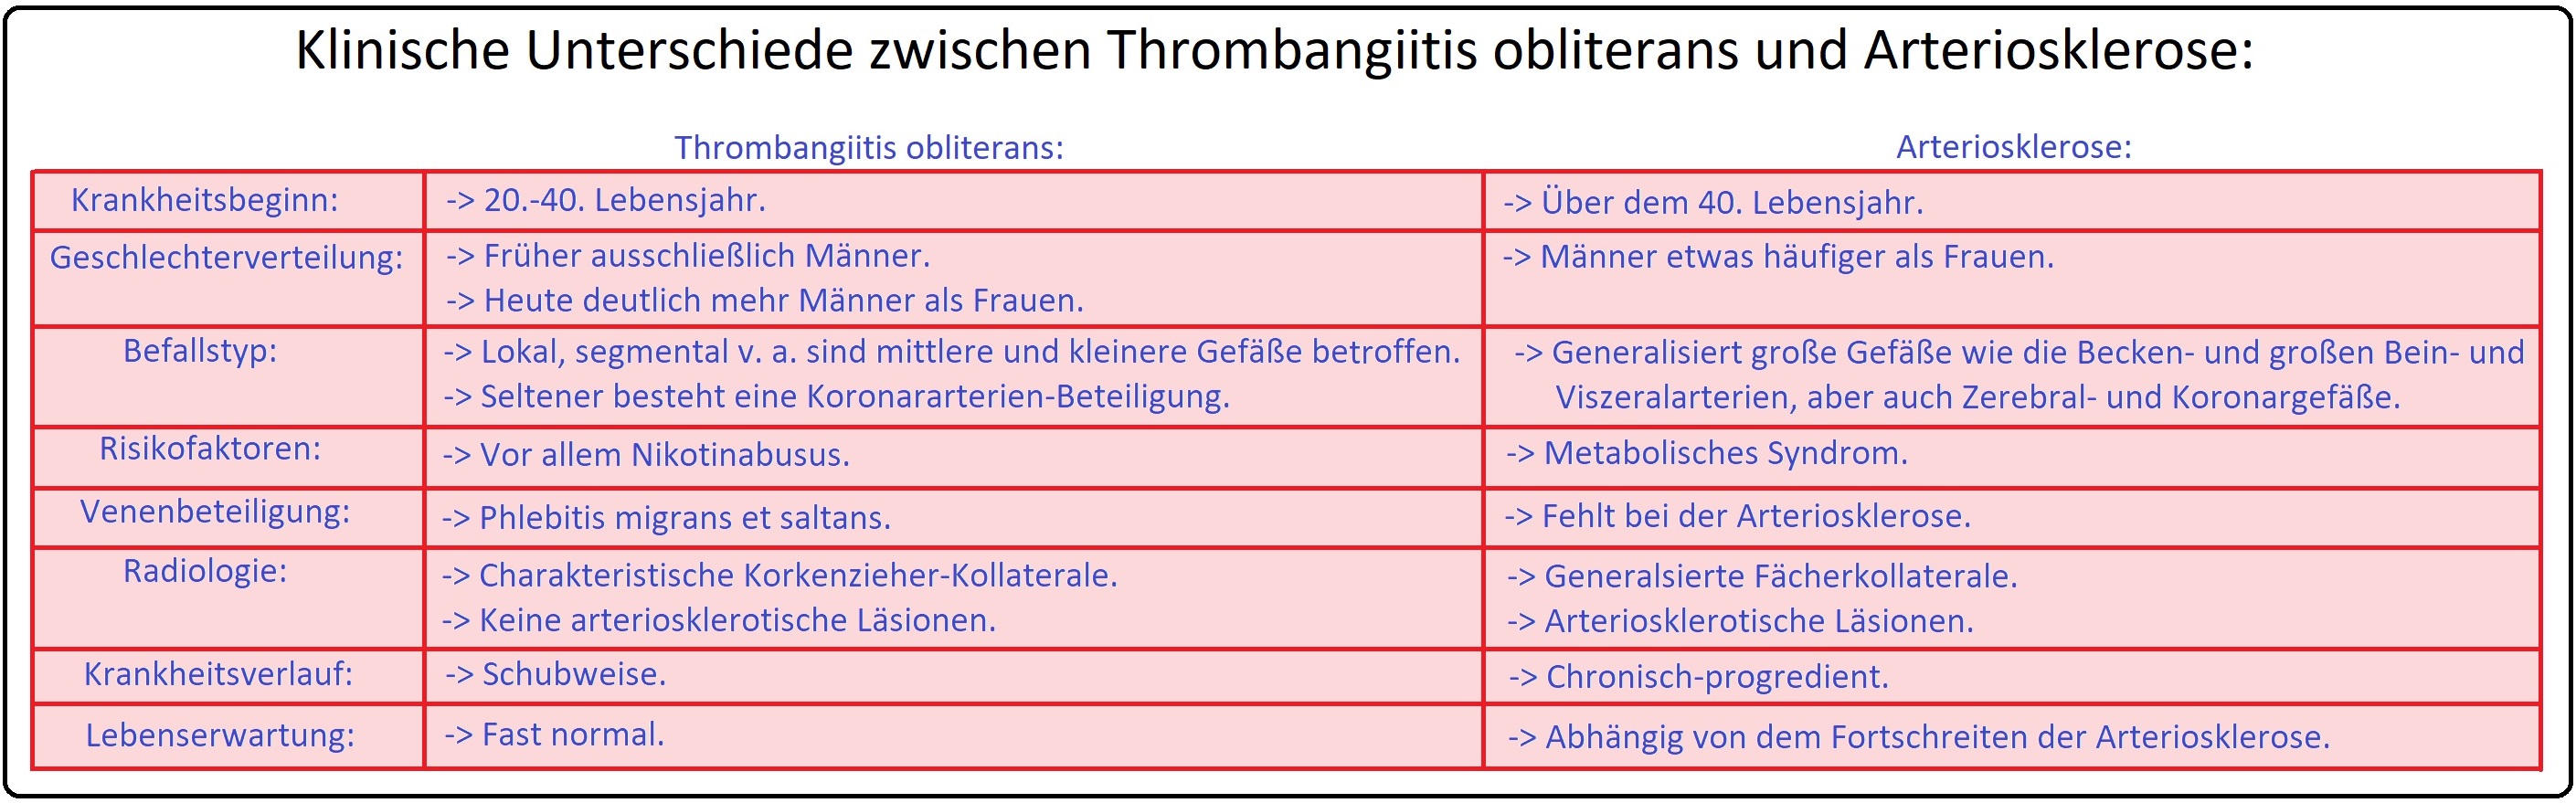 584 Klinische Unterschiede zwischen Thrombangiitis obliterans und Arteriosklerose